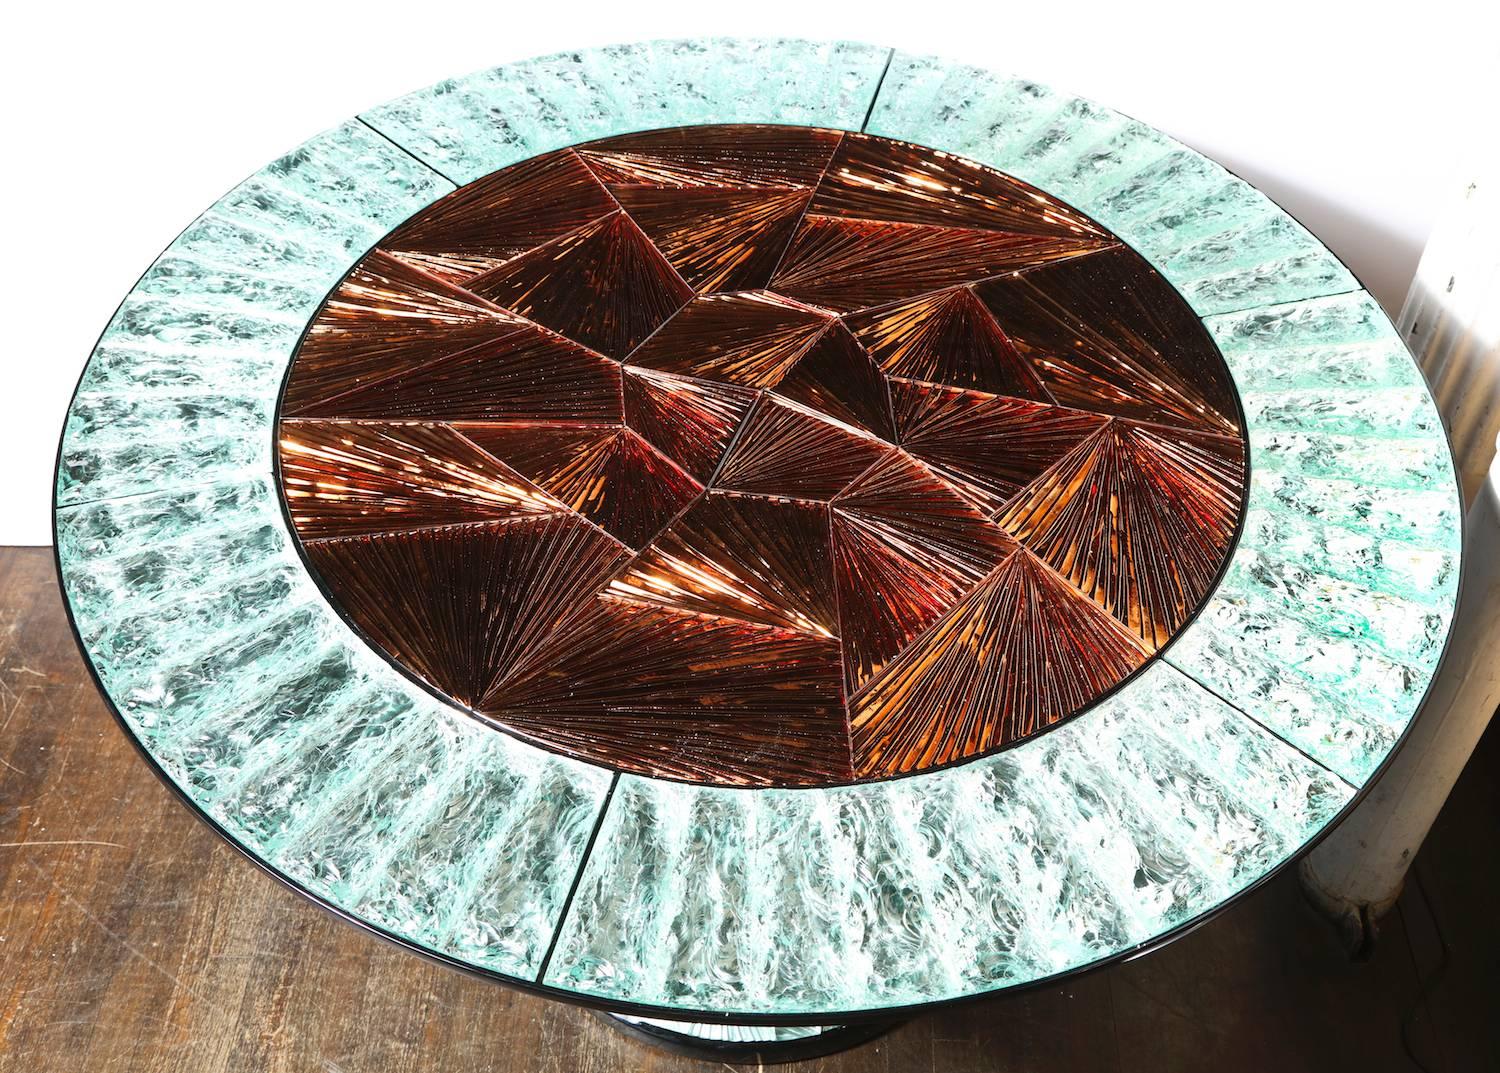 Table centrale unique du studio Donzella & Ghiró. Guéridon circulaire dont le support est en bois laqué noir avec des éléments en verre insérés, sculptés et ciselés à la main. Un exemple incroyable du savoir-faire du Ghiró Studio et de ses